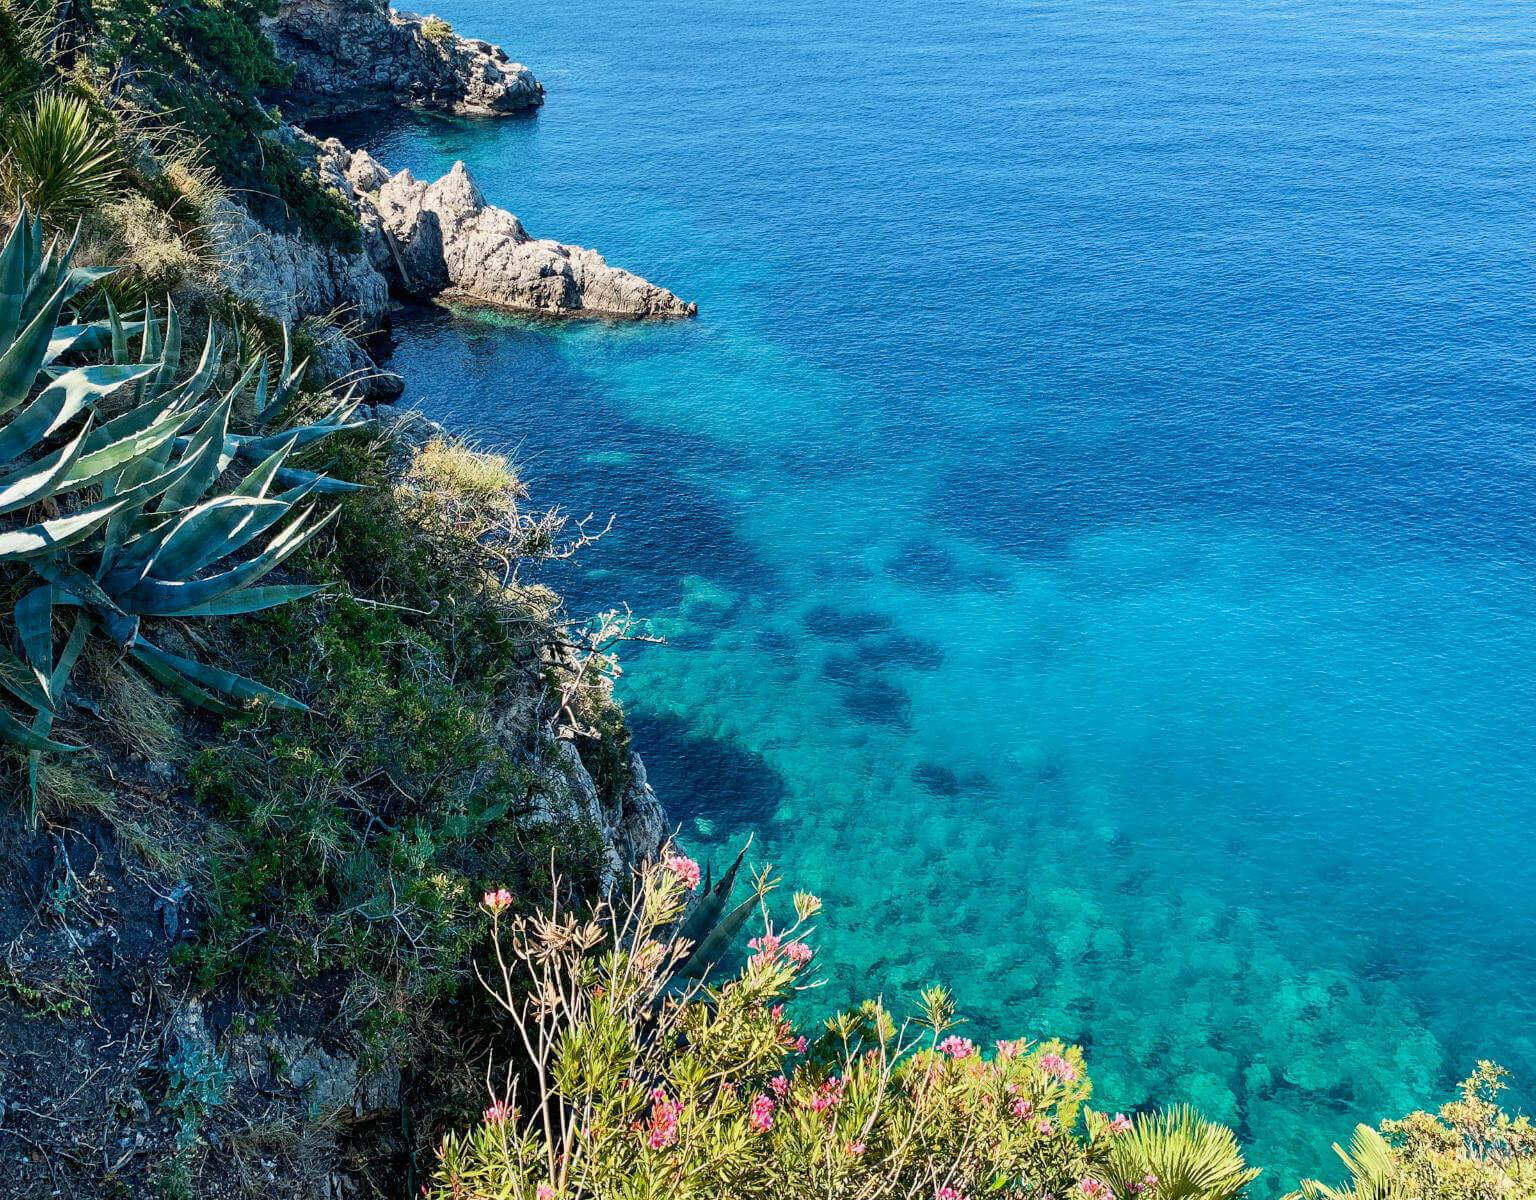 Die Steilküste der Adria eröffnet beeindrucke Ausblicke auf die grüne Vegetation, u.a. eine große Argavenpflanze und das darunterliegende glasklare Wasser.